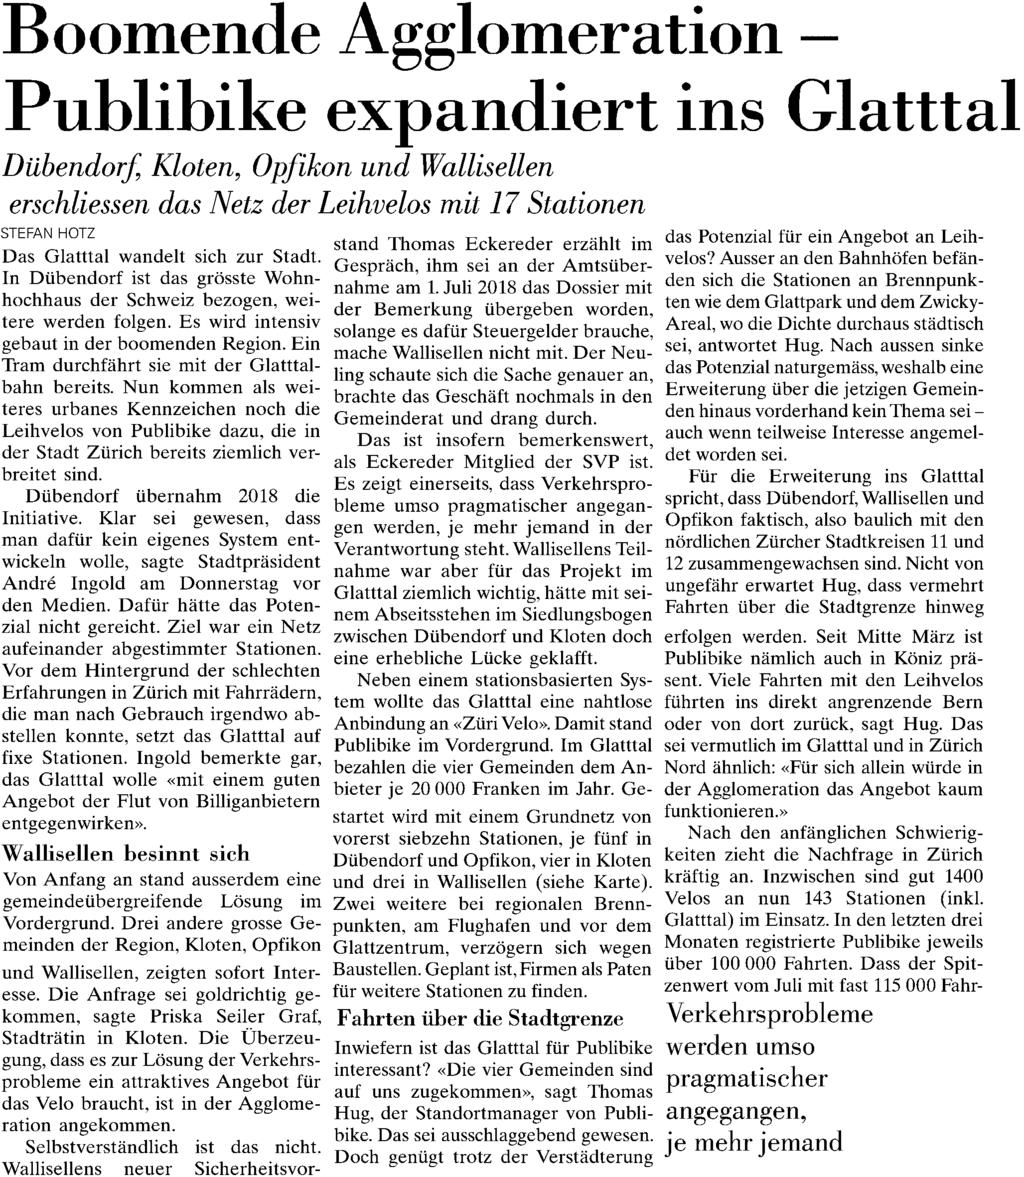 Neue Zürcher Zeitung 8021 Zürich 044/ 258 11 11 https://www.nzz.ch/ Auflage: 102'430 Seite: 18 Erscheinungsweise: 6x wöchentlich Fläche: 69'760 mm² Themen-Nr.: 382.